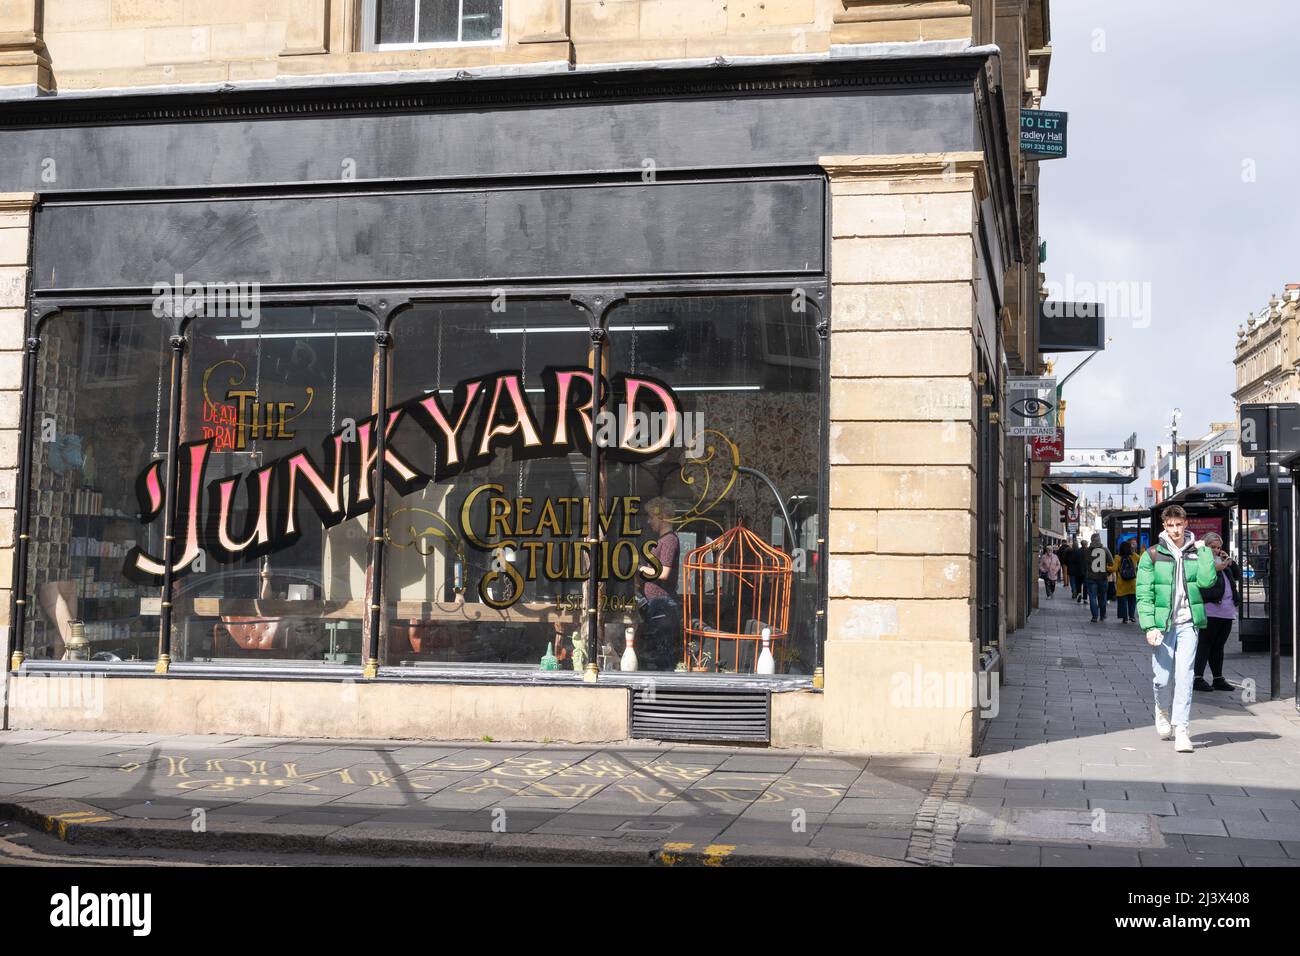 Salon de coiffure de junkyard dans le centre-ville de Newcastle upon Tyne, Royaume-Uni Banque D'Images